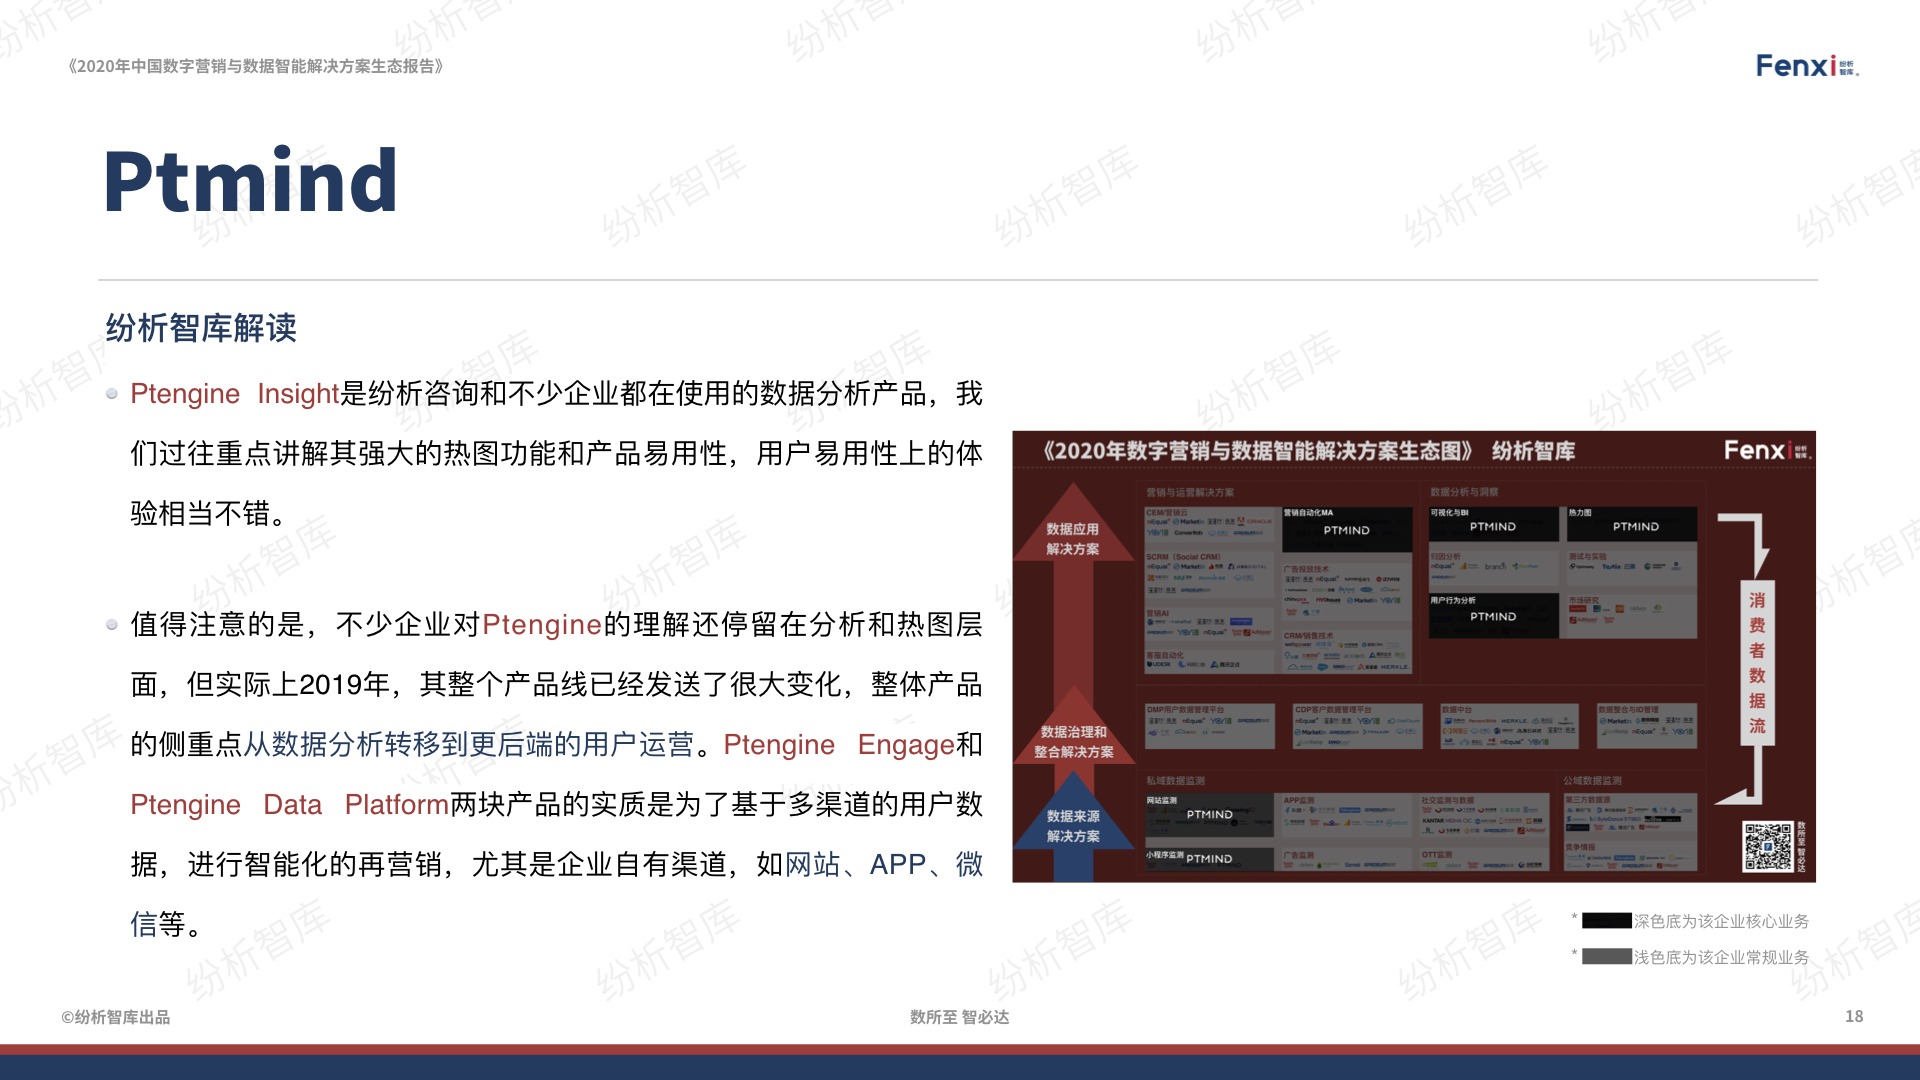 【V8】《2020年中国数字营销与数据智能解决方案生态图报告》0106.018.jpeg